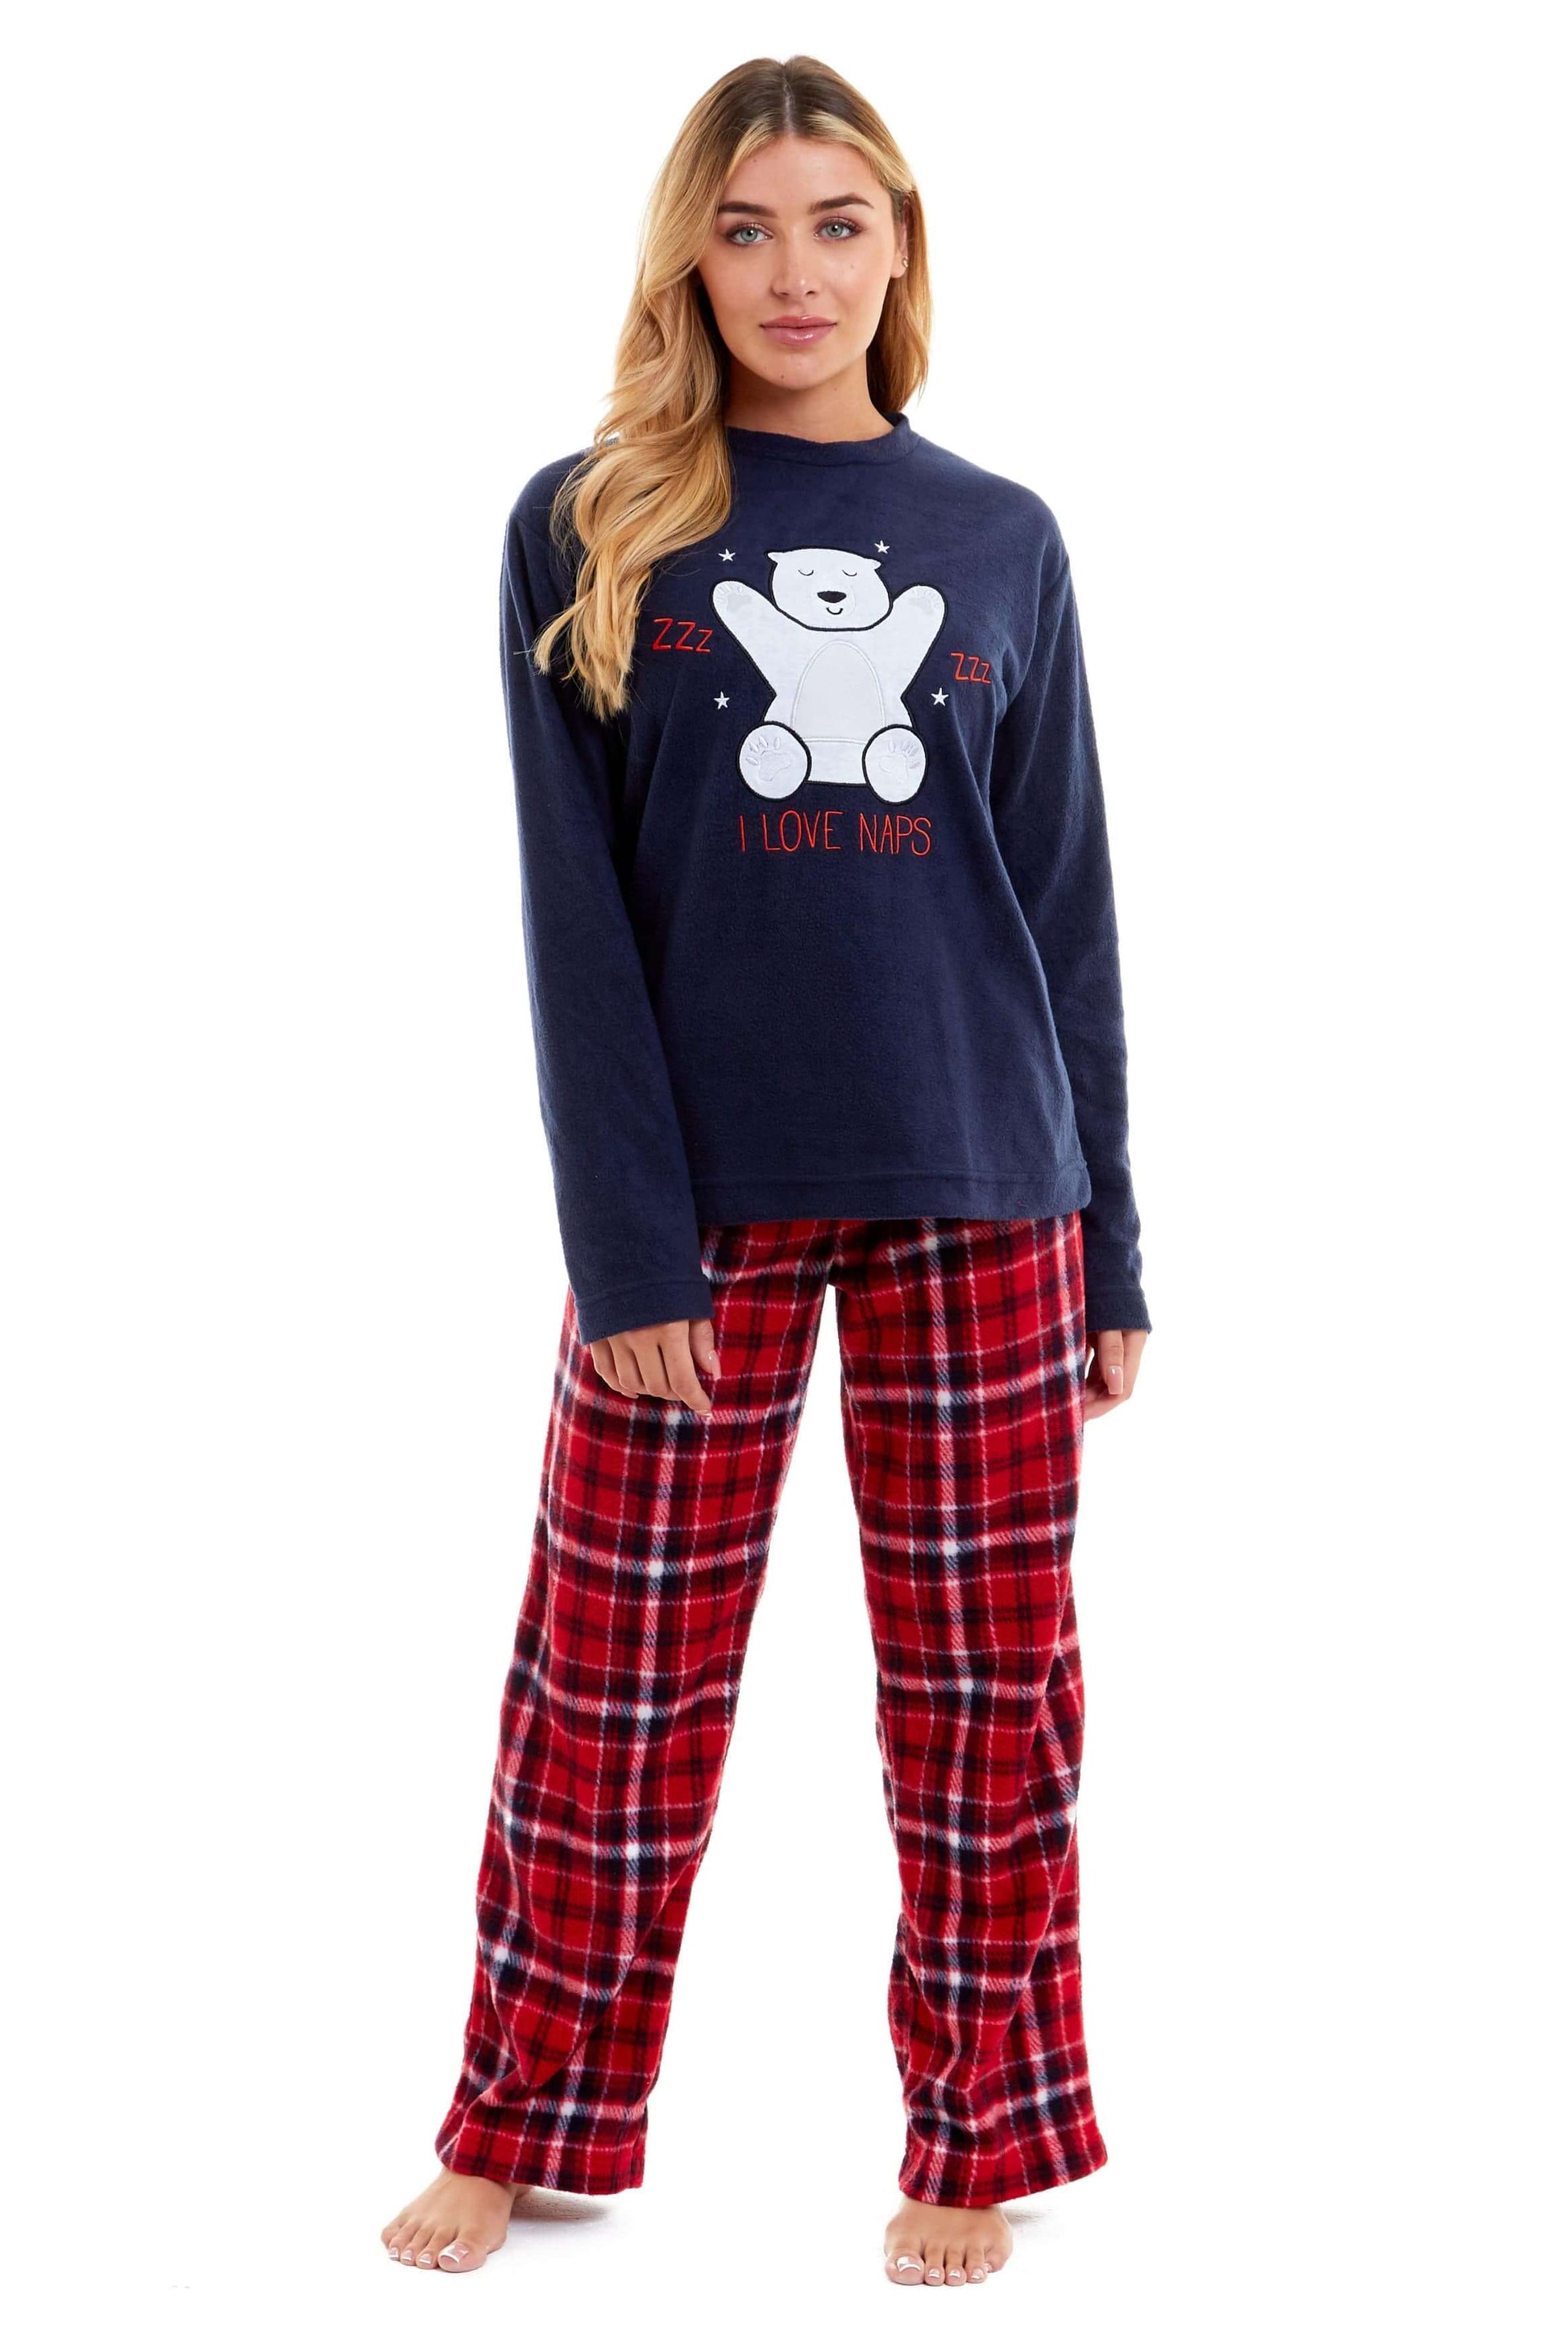 Polar Bear Fleece Pyjama Set, Cosy Everyday Loungewear, Christmas Gift Idea. Buy now for £17.00. A Pyjamas by Daisy Dreamer. 12-14, 16-18, 18-20, 8-10, animal, blue, check, christmas, daisy dreamer, festive, fleece, gift, ladies, long sleeve, loungewear,